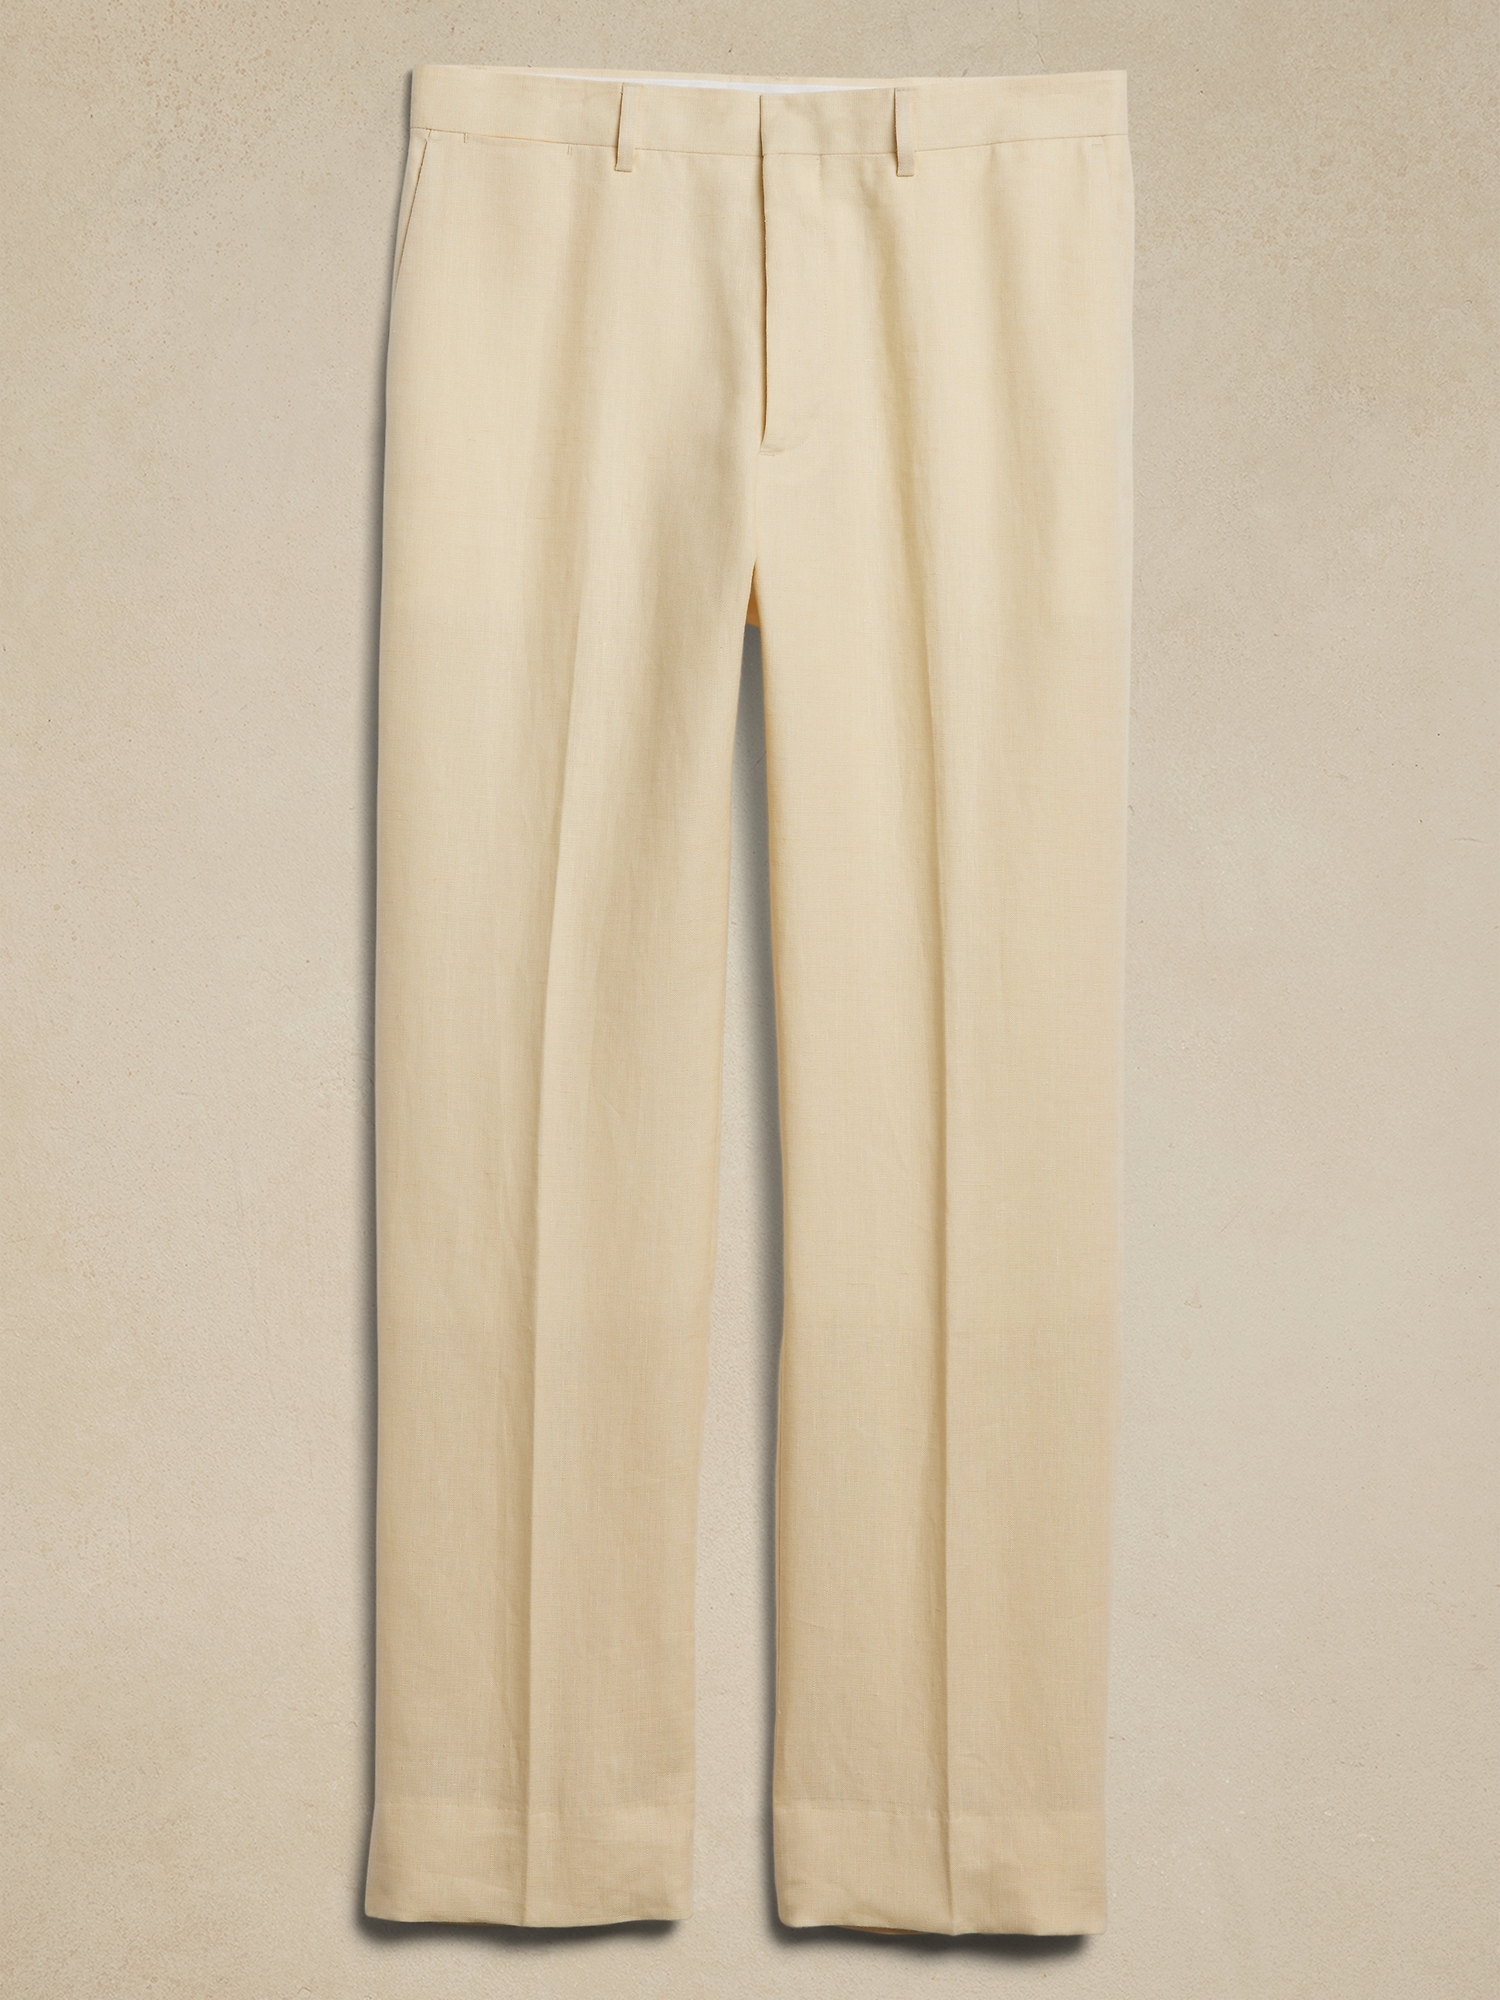 Soquel Linen Suit Pant